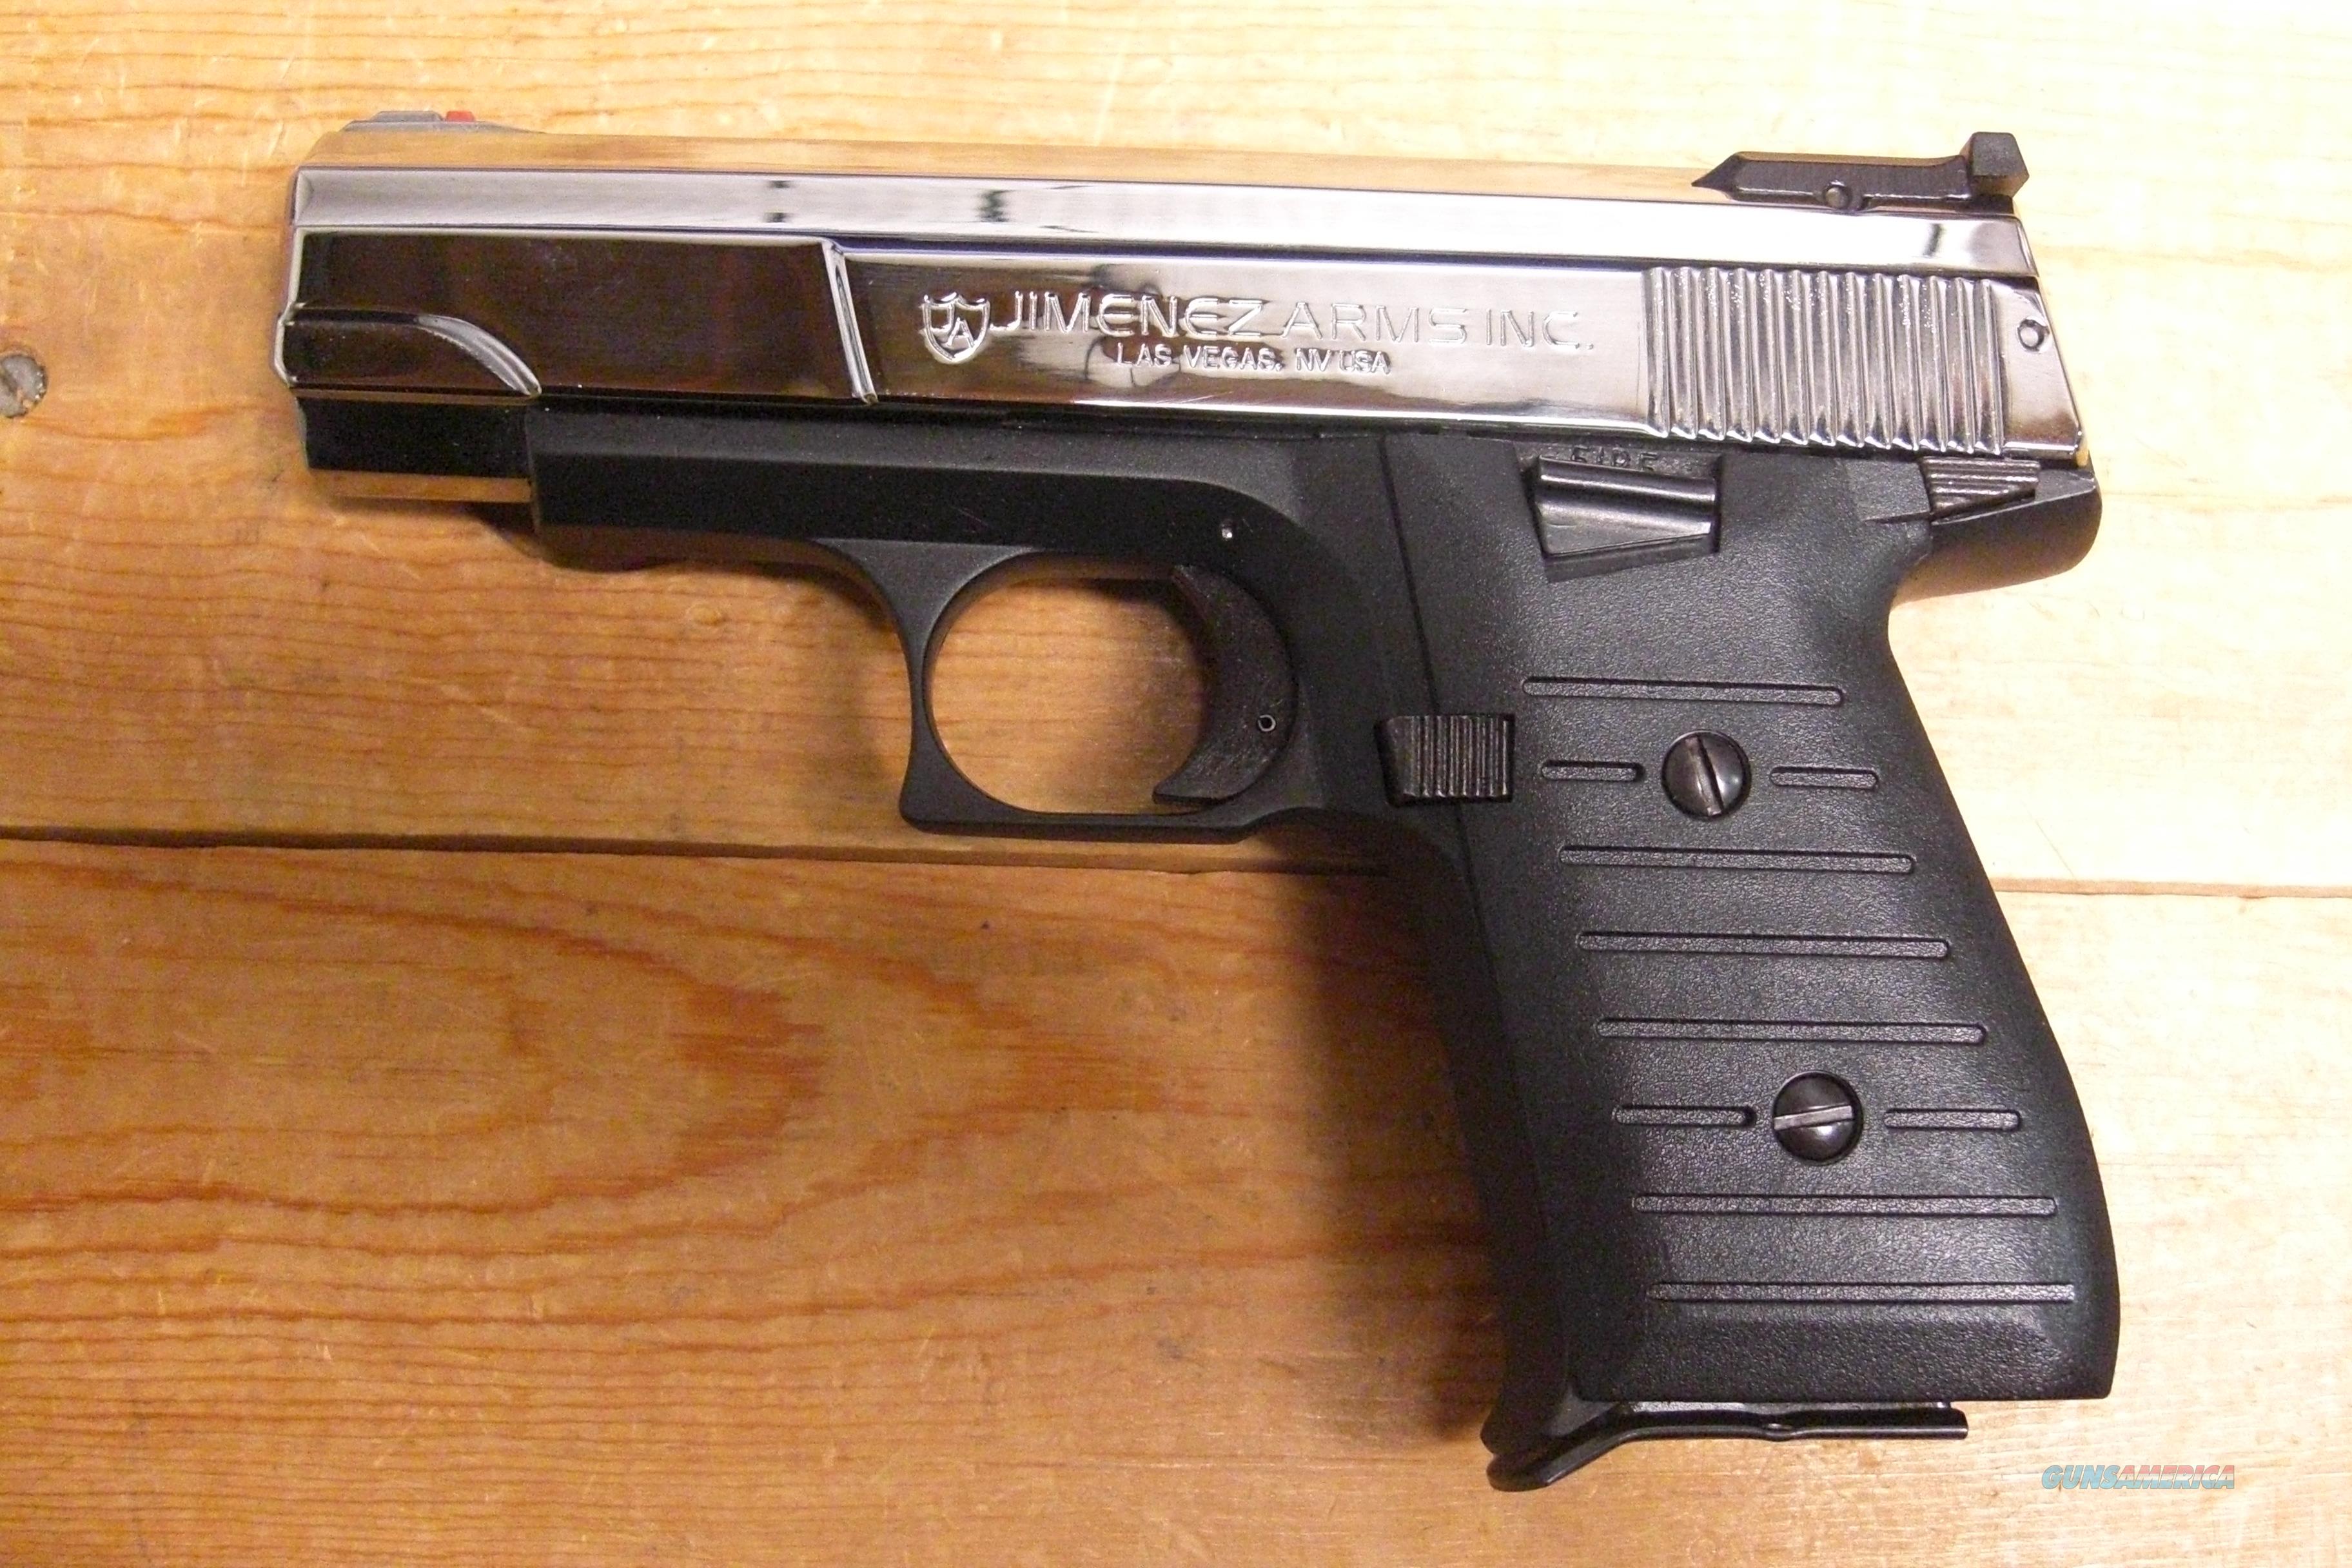 J.A. Nine Jimenez Arms pistol w/polished ch... for sale